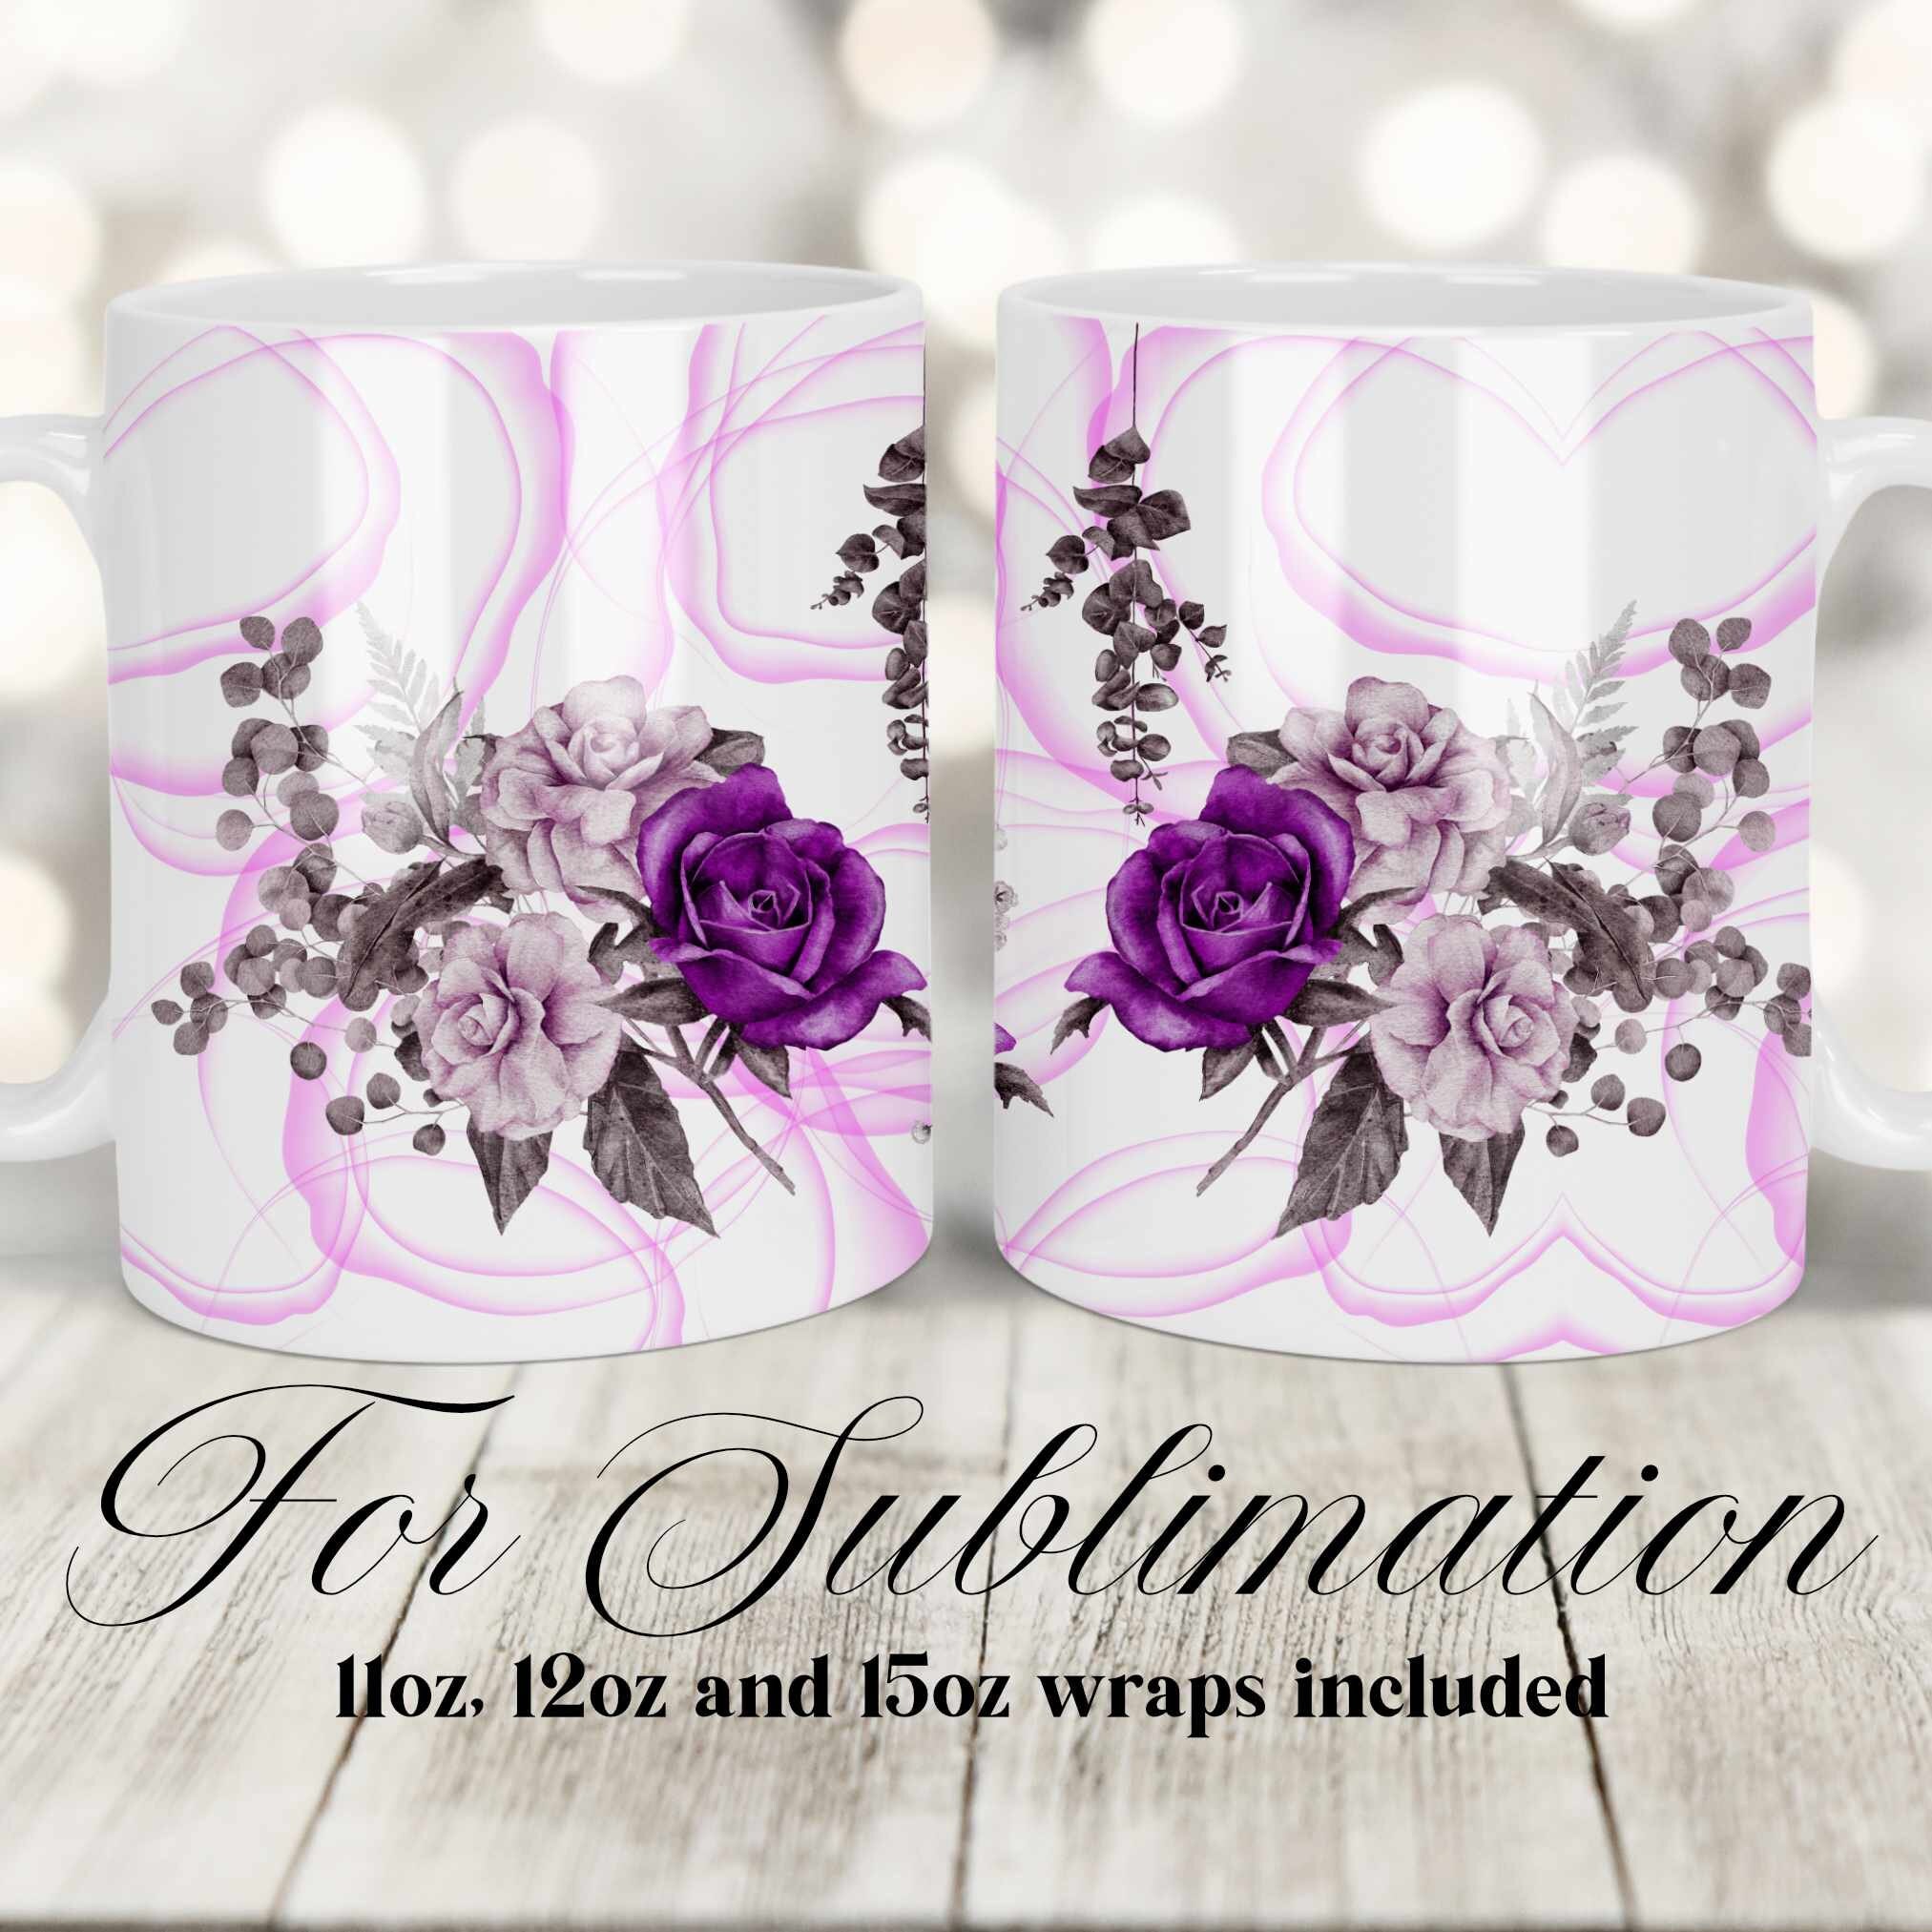 Violet Flower Design Mug Sublimation-11oz & 15oz (2012621)